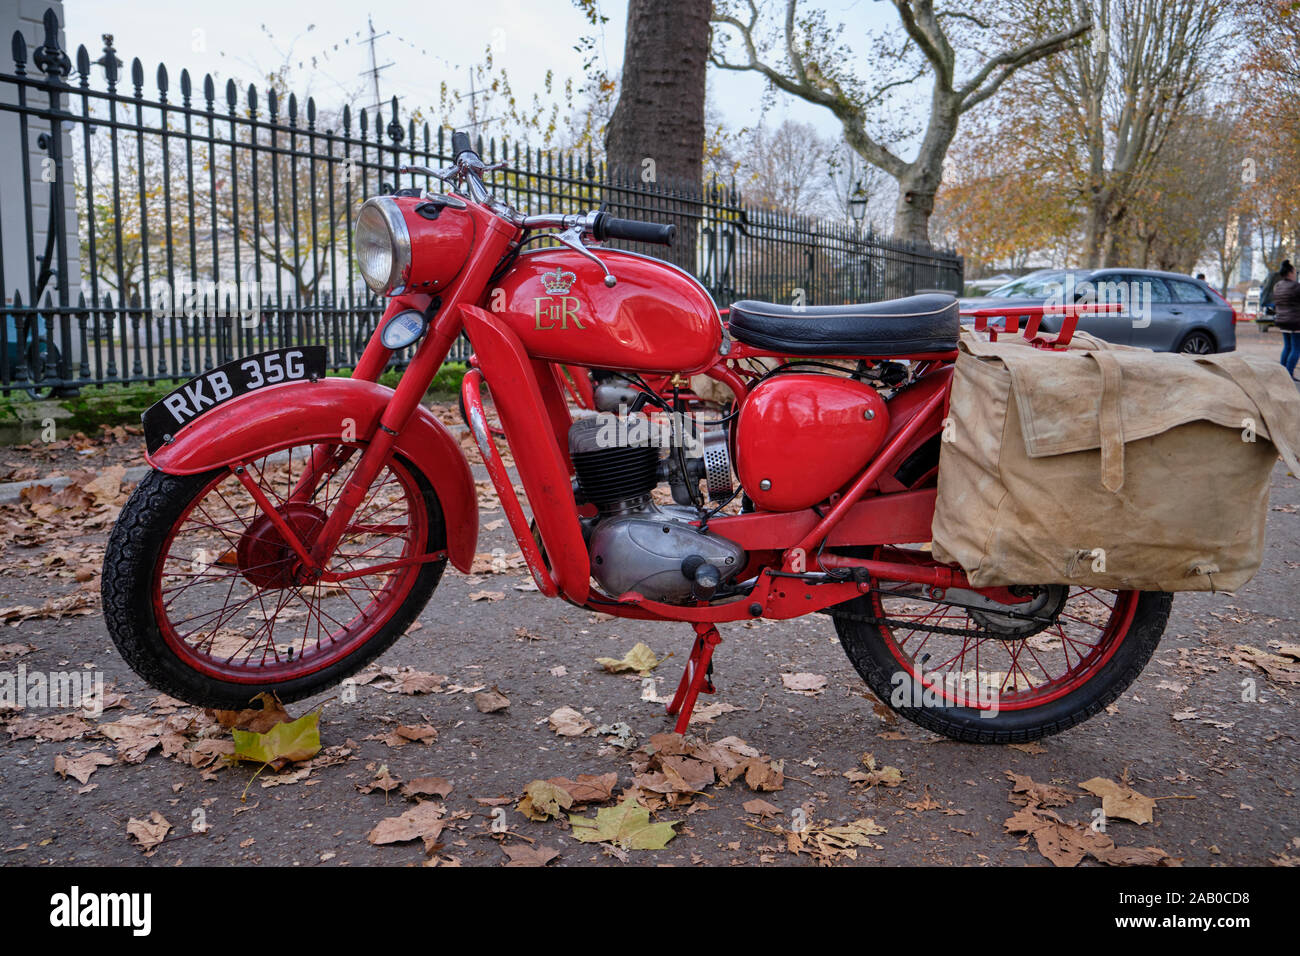 BSA vintage Bantam motocicleta roja de General Post Office-Royal Mail con ER regal logo, y pararse en la acera en bolsas día de otoño Foto de stock